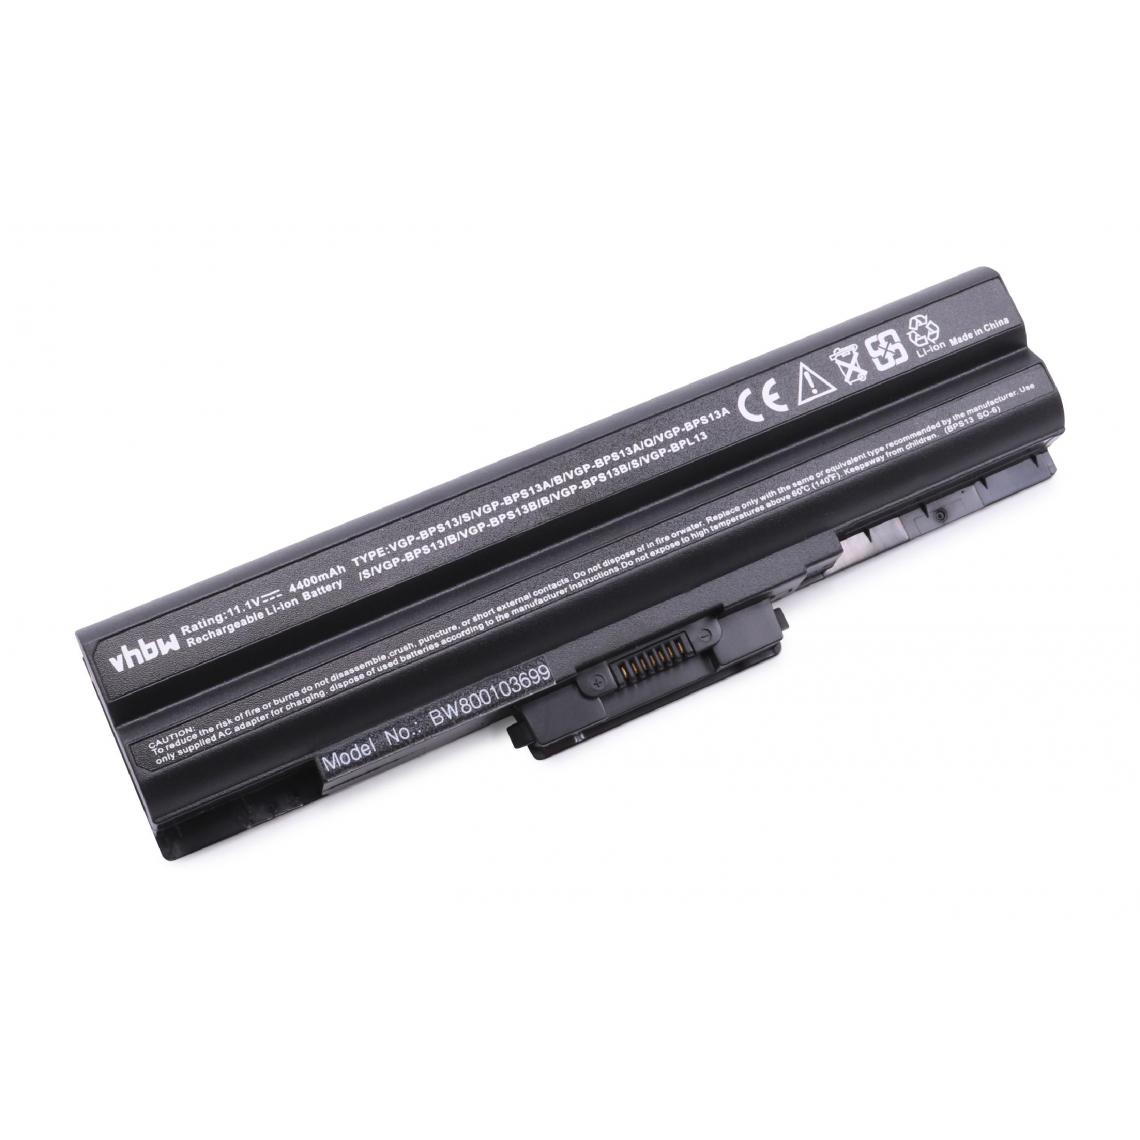 Vhbw - vhbw Batterie compatible avec Sony Vaio VPCS125EC, VPCS128EC, VPCS129GC, VPCS12C7E/B ordinateur portable (4400mAh, 11,1V, noir) - Batterie PC Portable